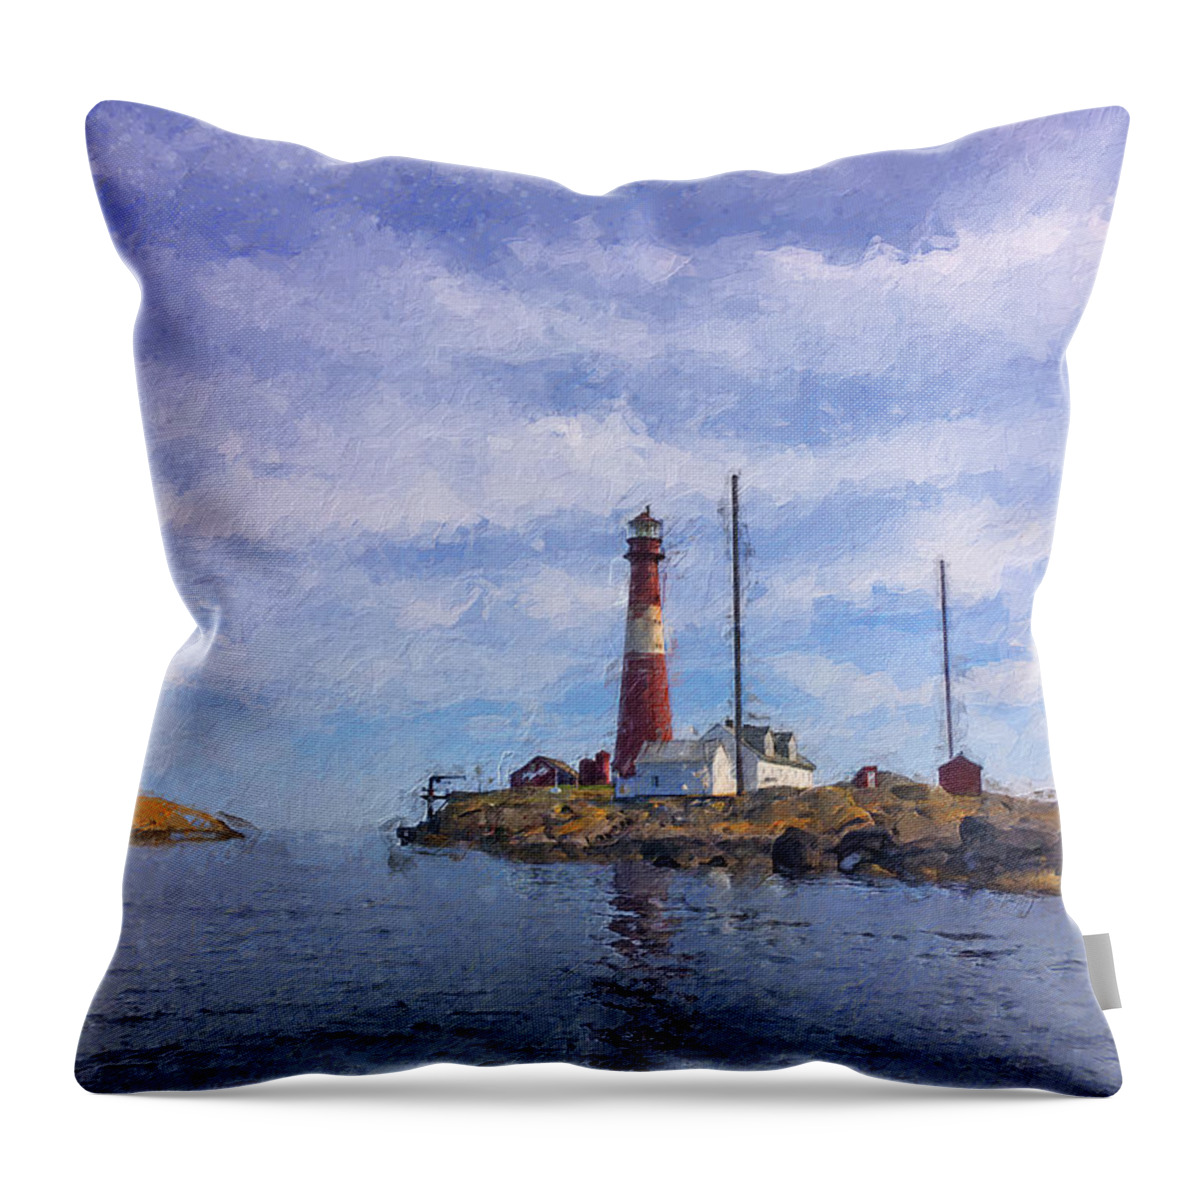 Lighthouse Throw Pillow featuring the digital art Faerder lighthouse by Geir Rosset